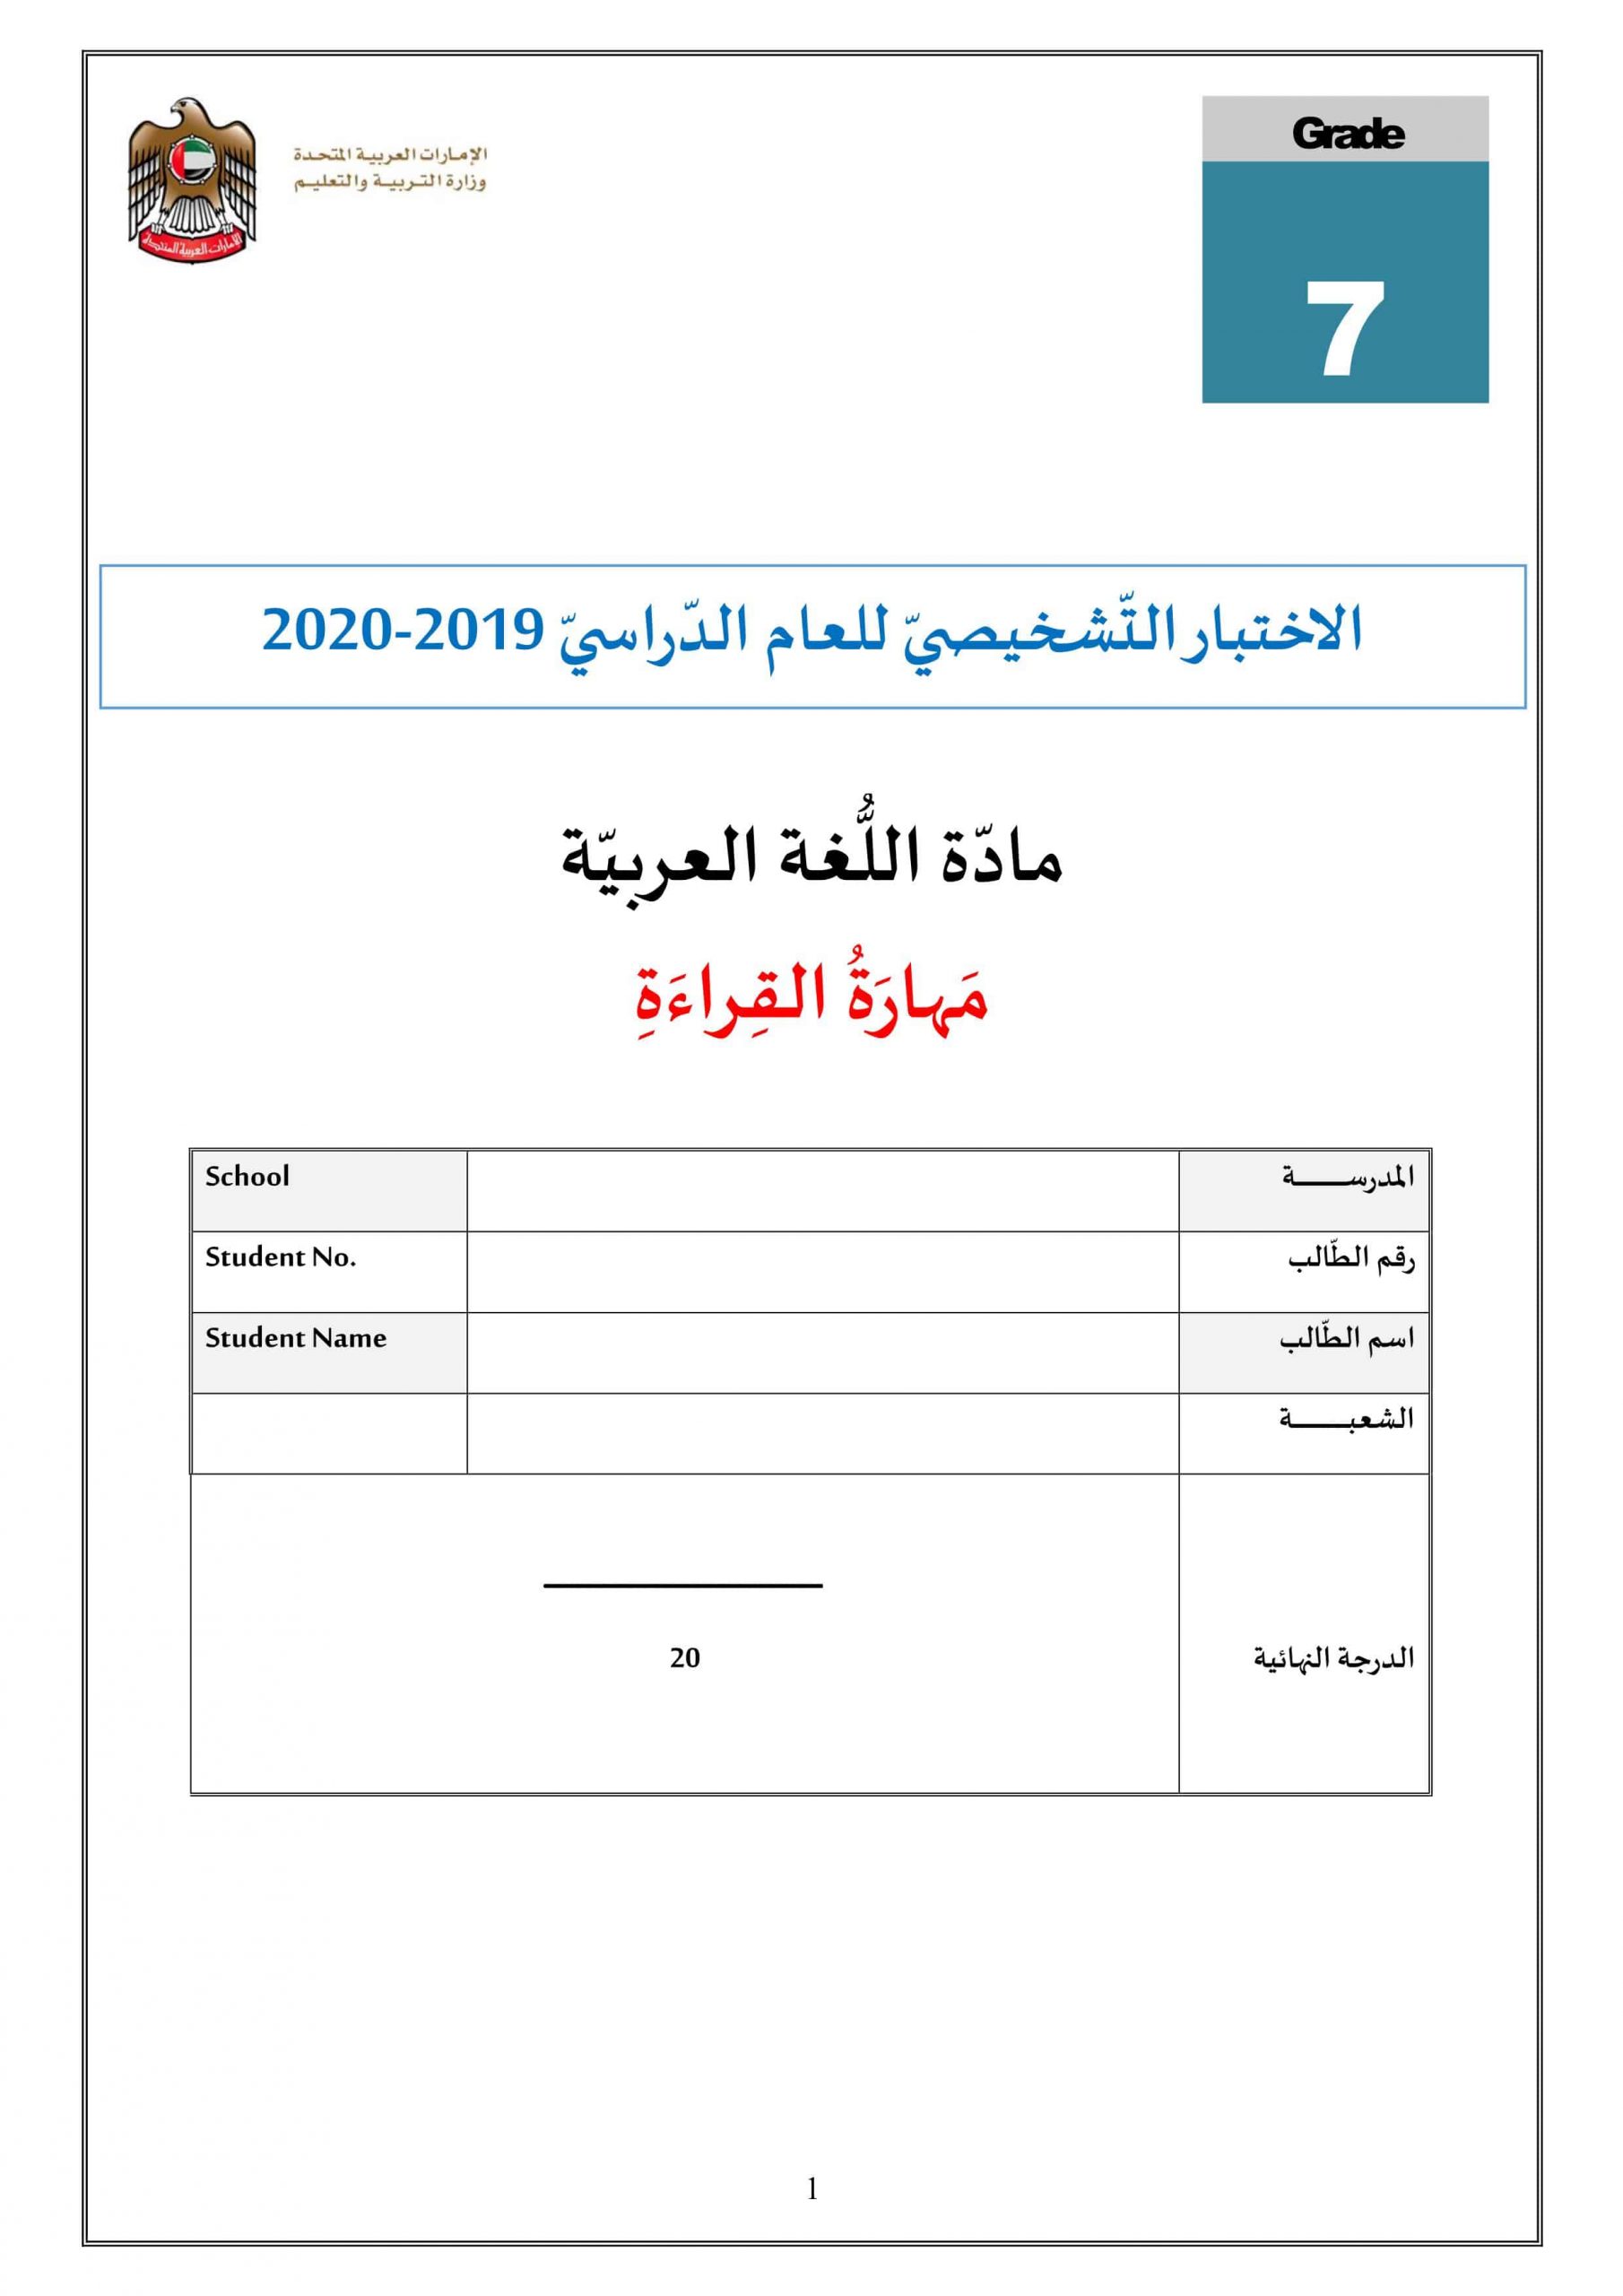 حل الاختبار التشخيصي مهارة القراءة 2019-2020 الصف السابع مادة اللغة العربية